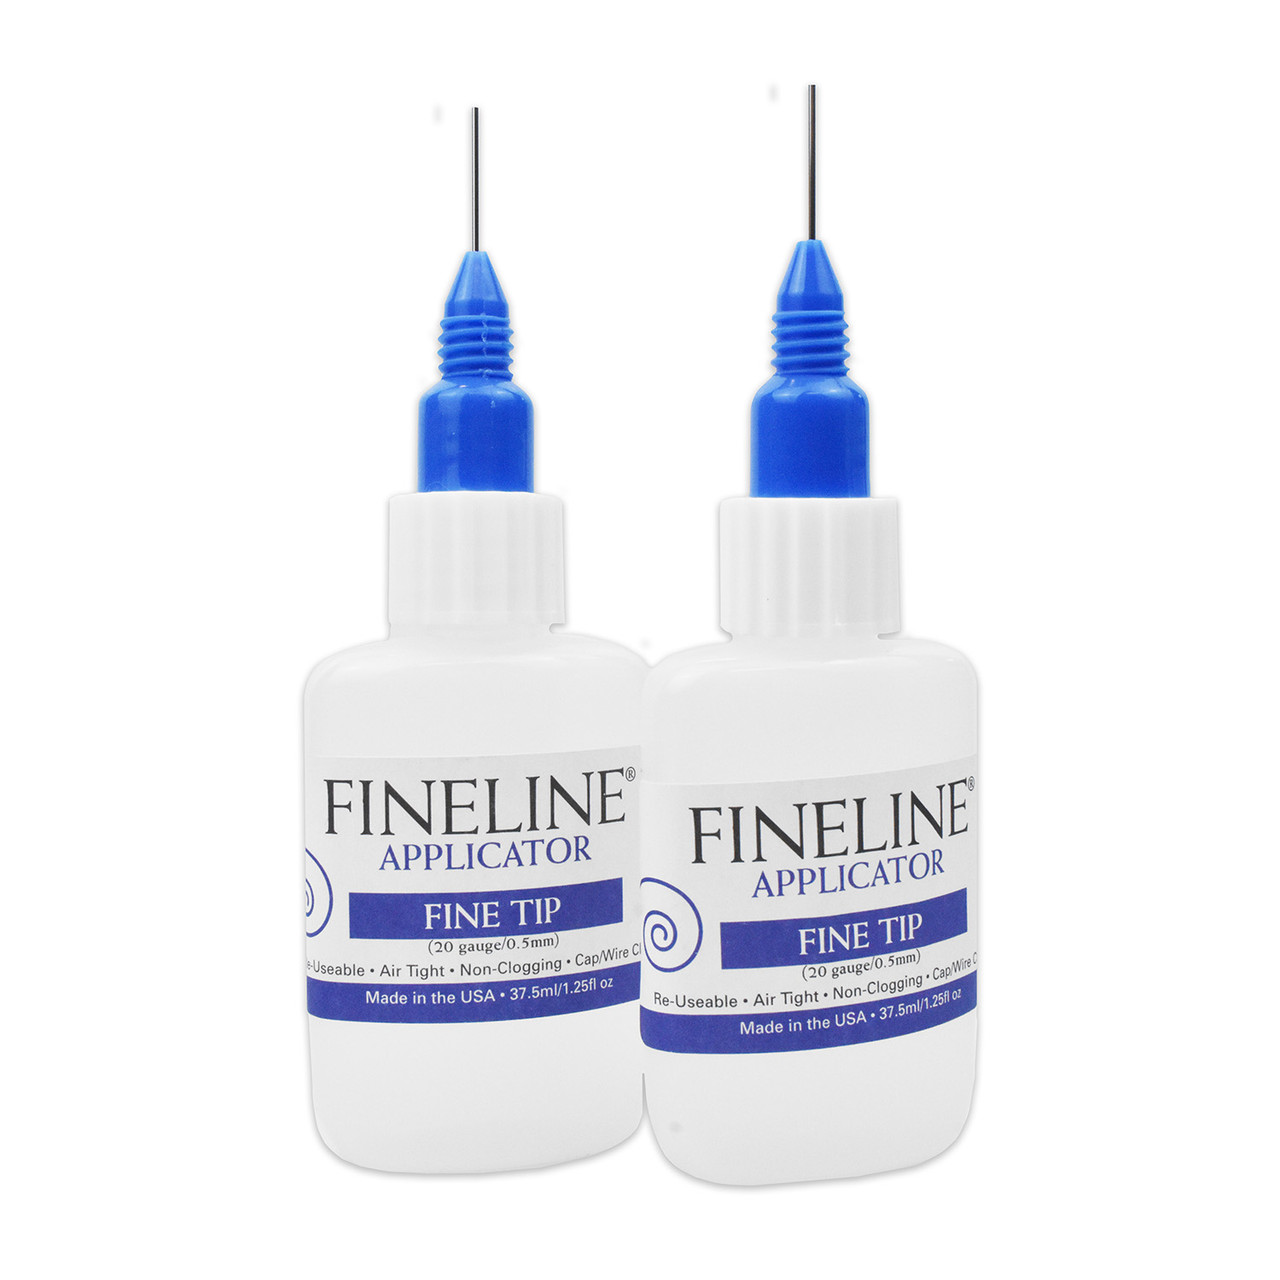 Fineline Applicator 20 gauge / 0.5mm 3 pack